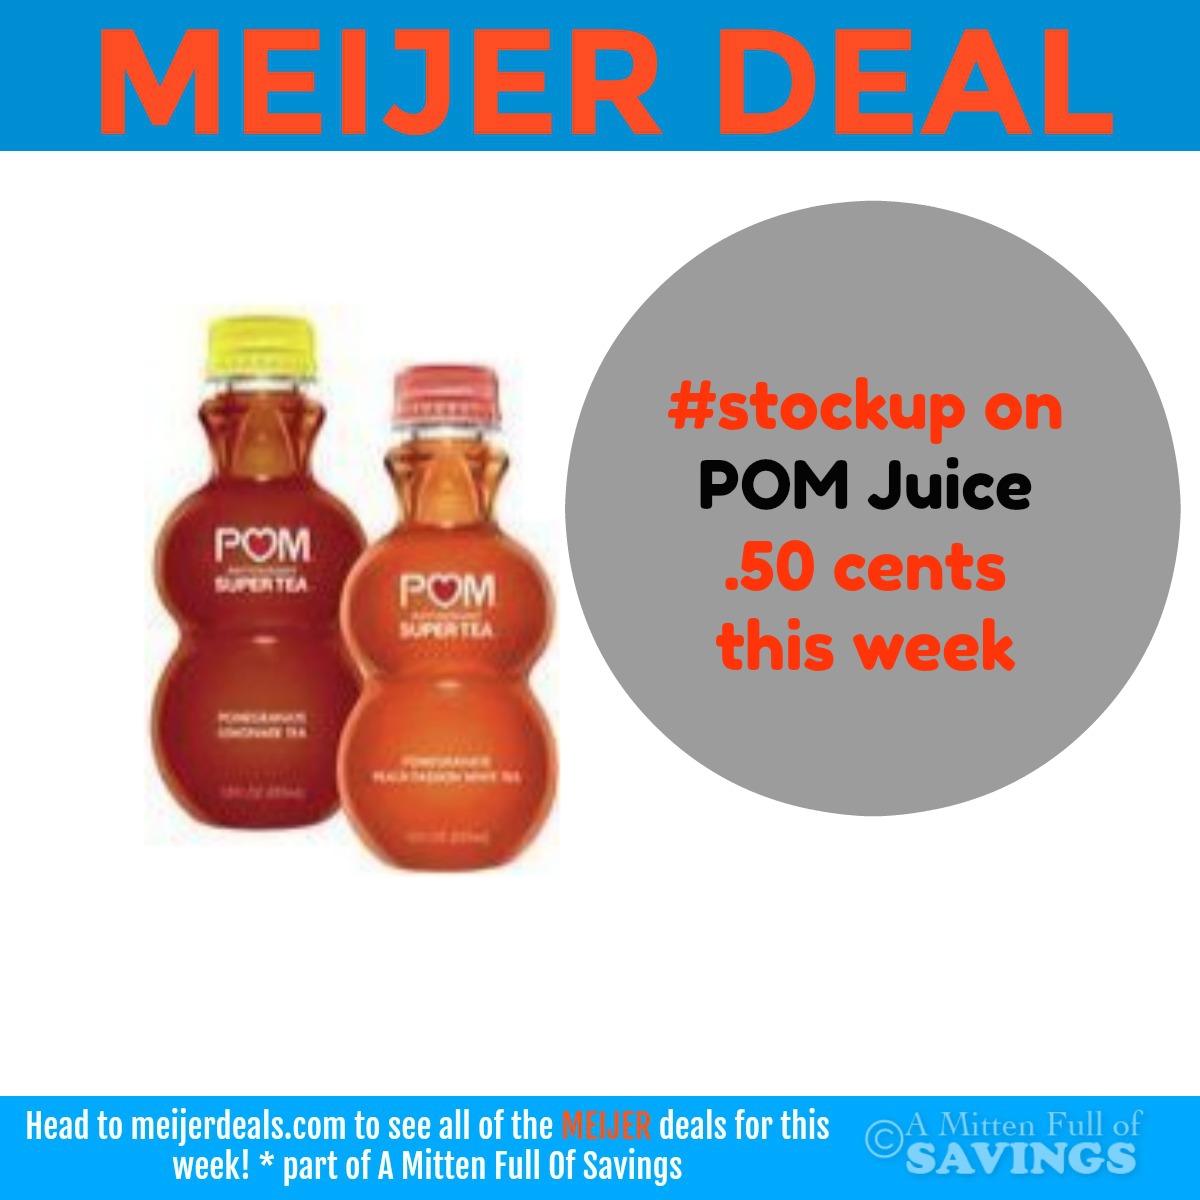 Meijer deal on POM Juice